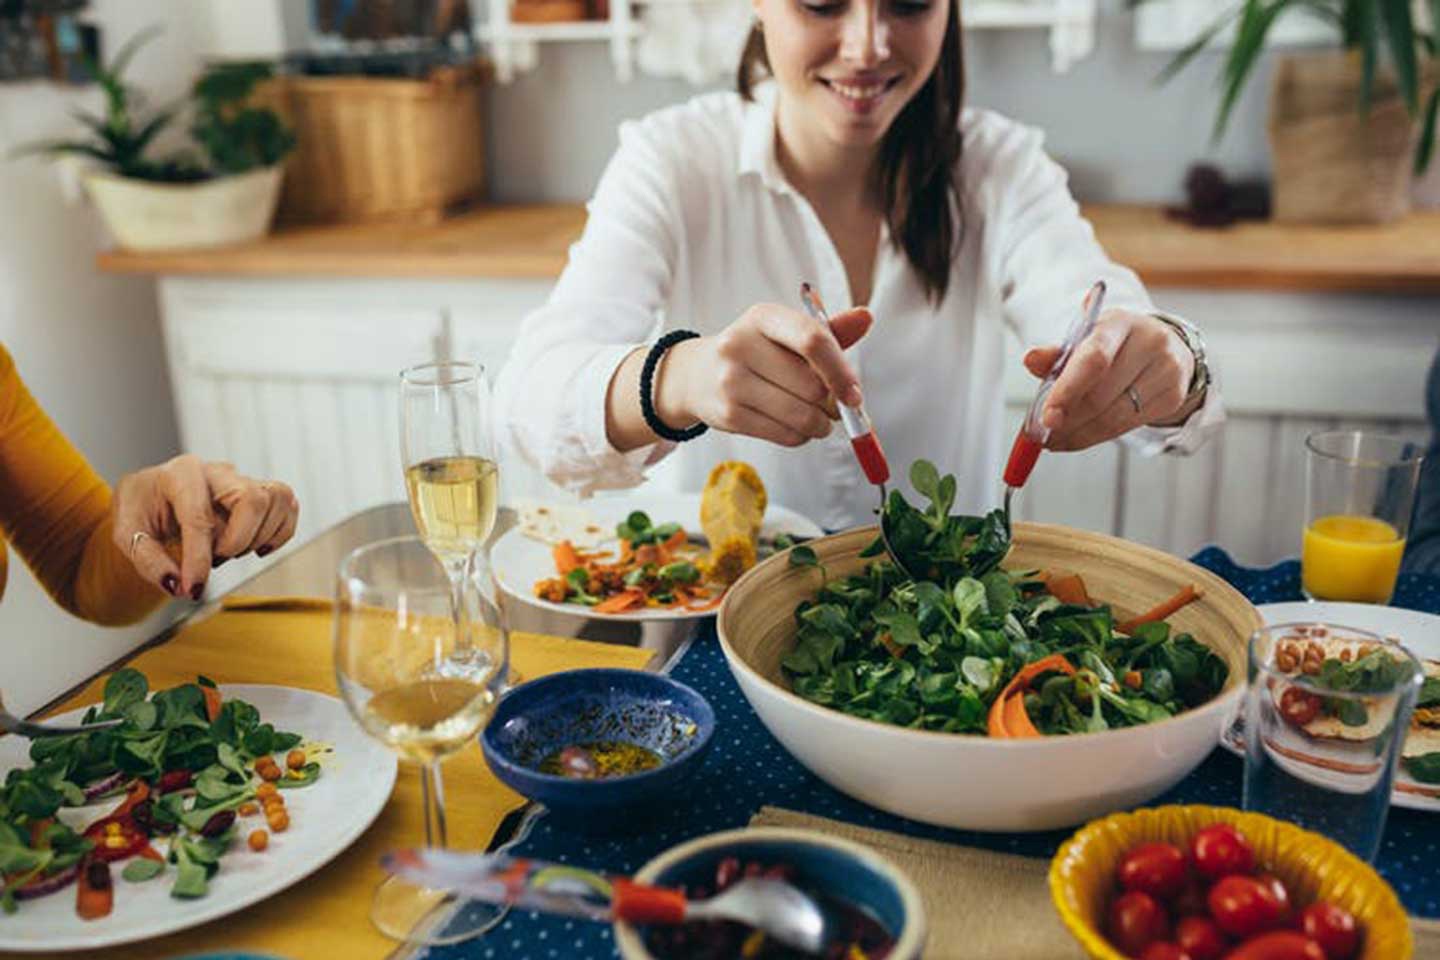 Ăn thực phẩm có nguồn gốc từ thực vật lành mạnh giúp tránh được 41% nhiễm Covid-19 nặng /// Ảnh minh họa: Shutterstock